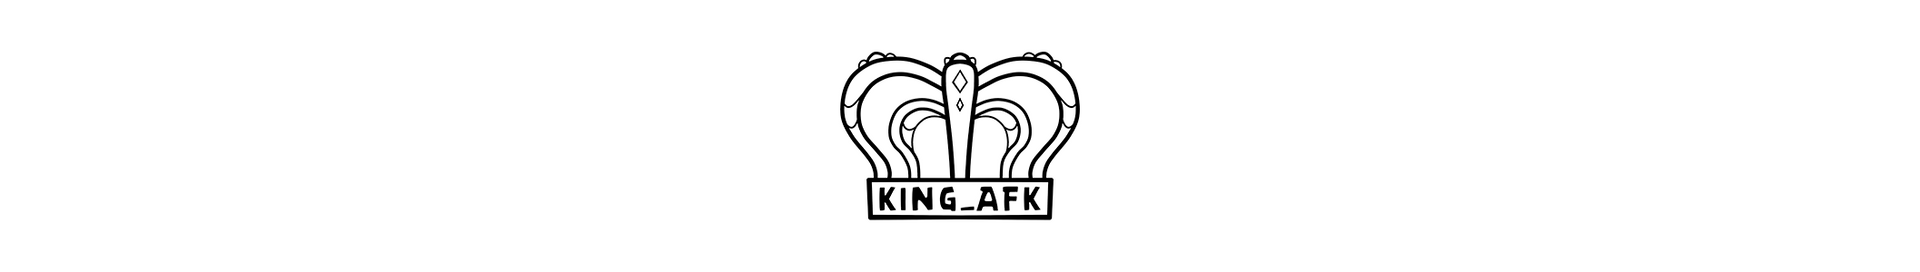 King_AFK